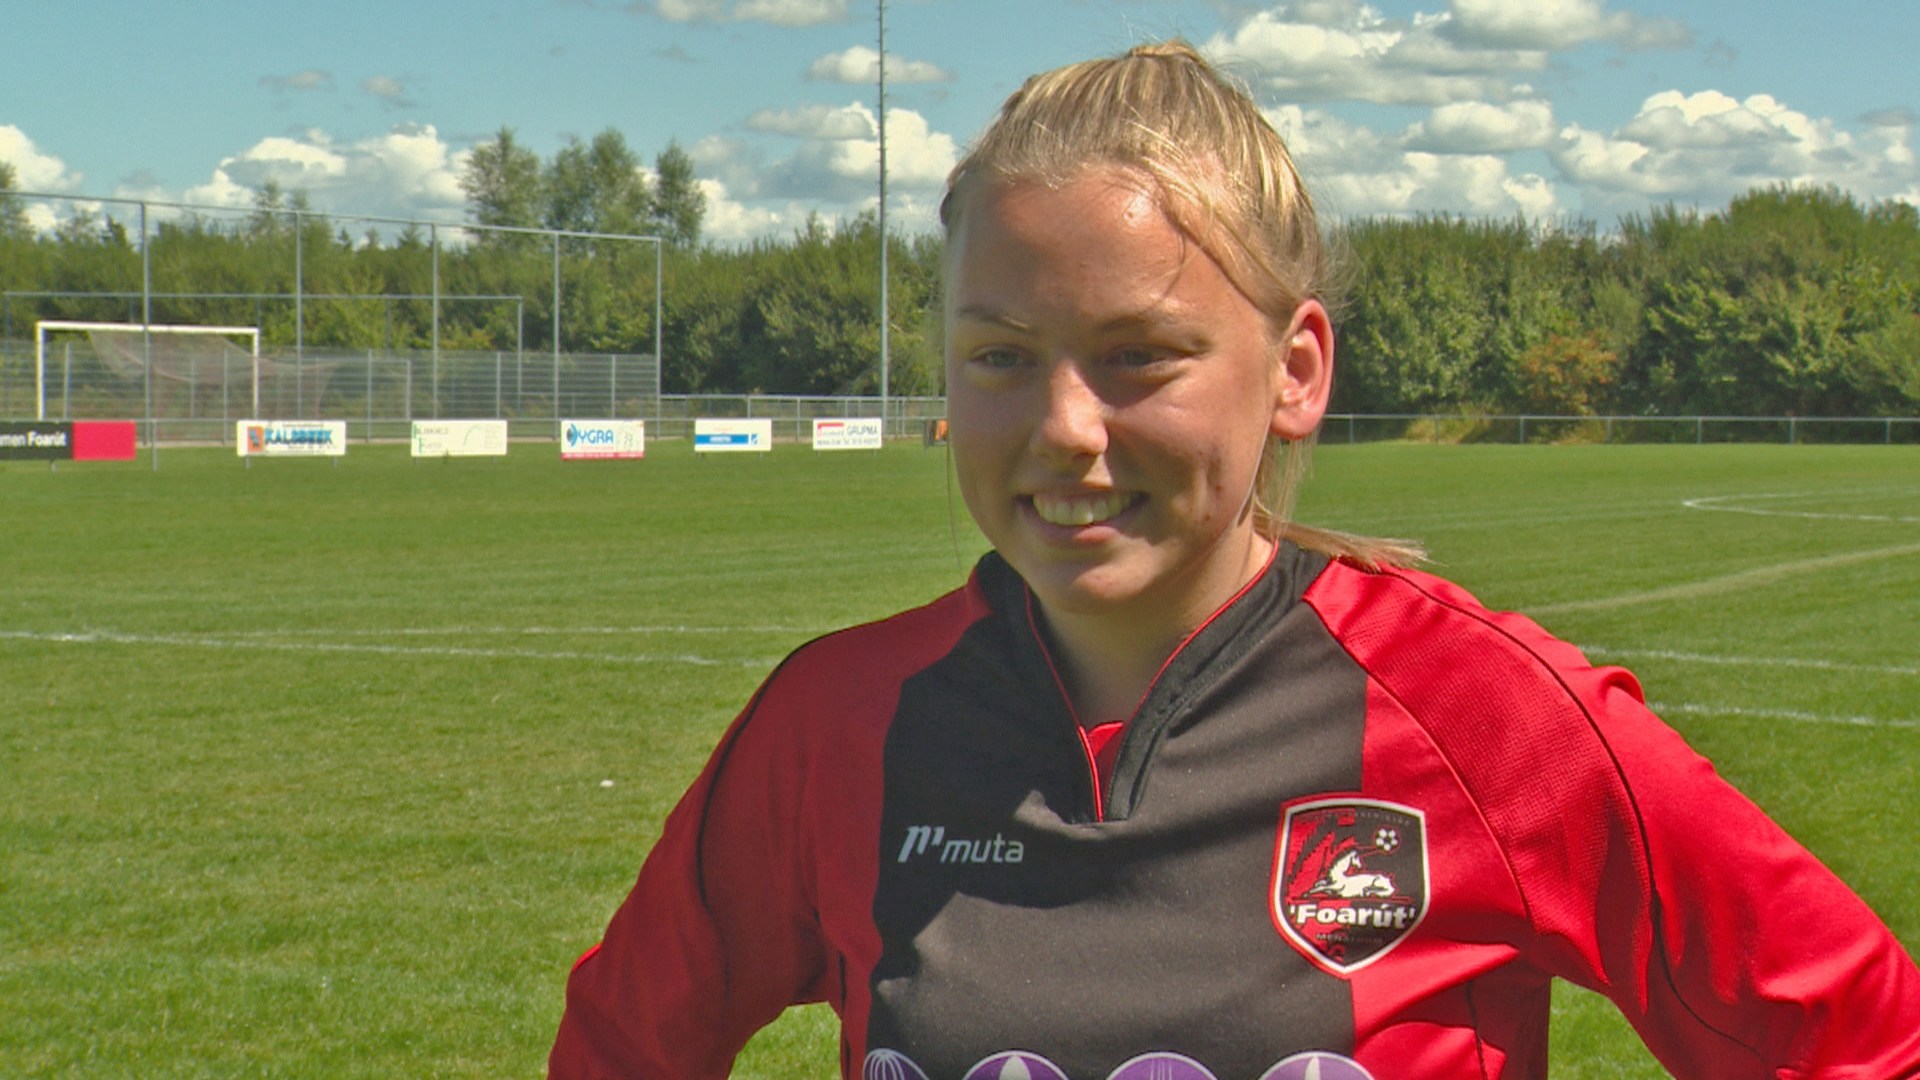 Conoce a Ellen Fokkema, la primera mujer que jugará de forma profesional en un equipo de fútbol masculino (Fotos)